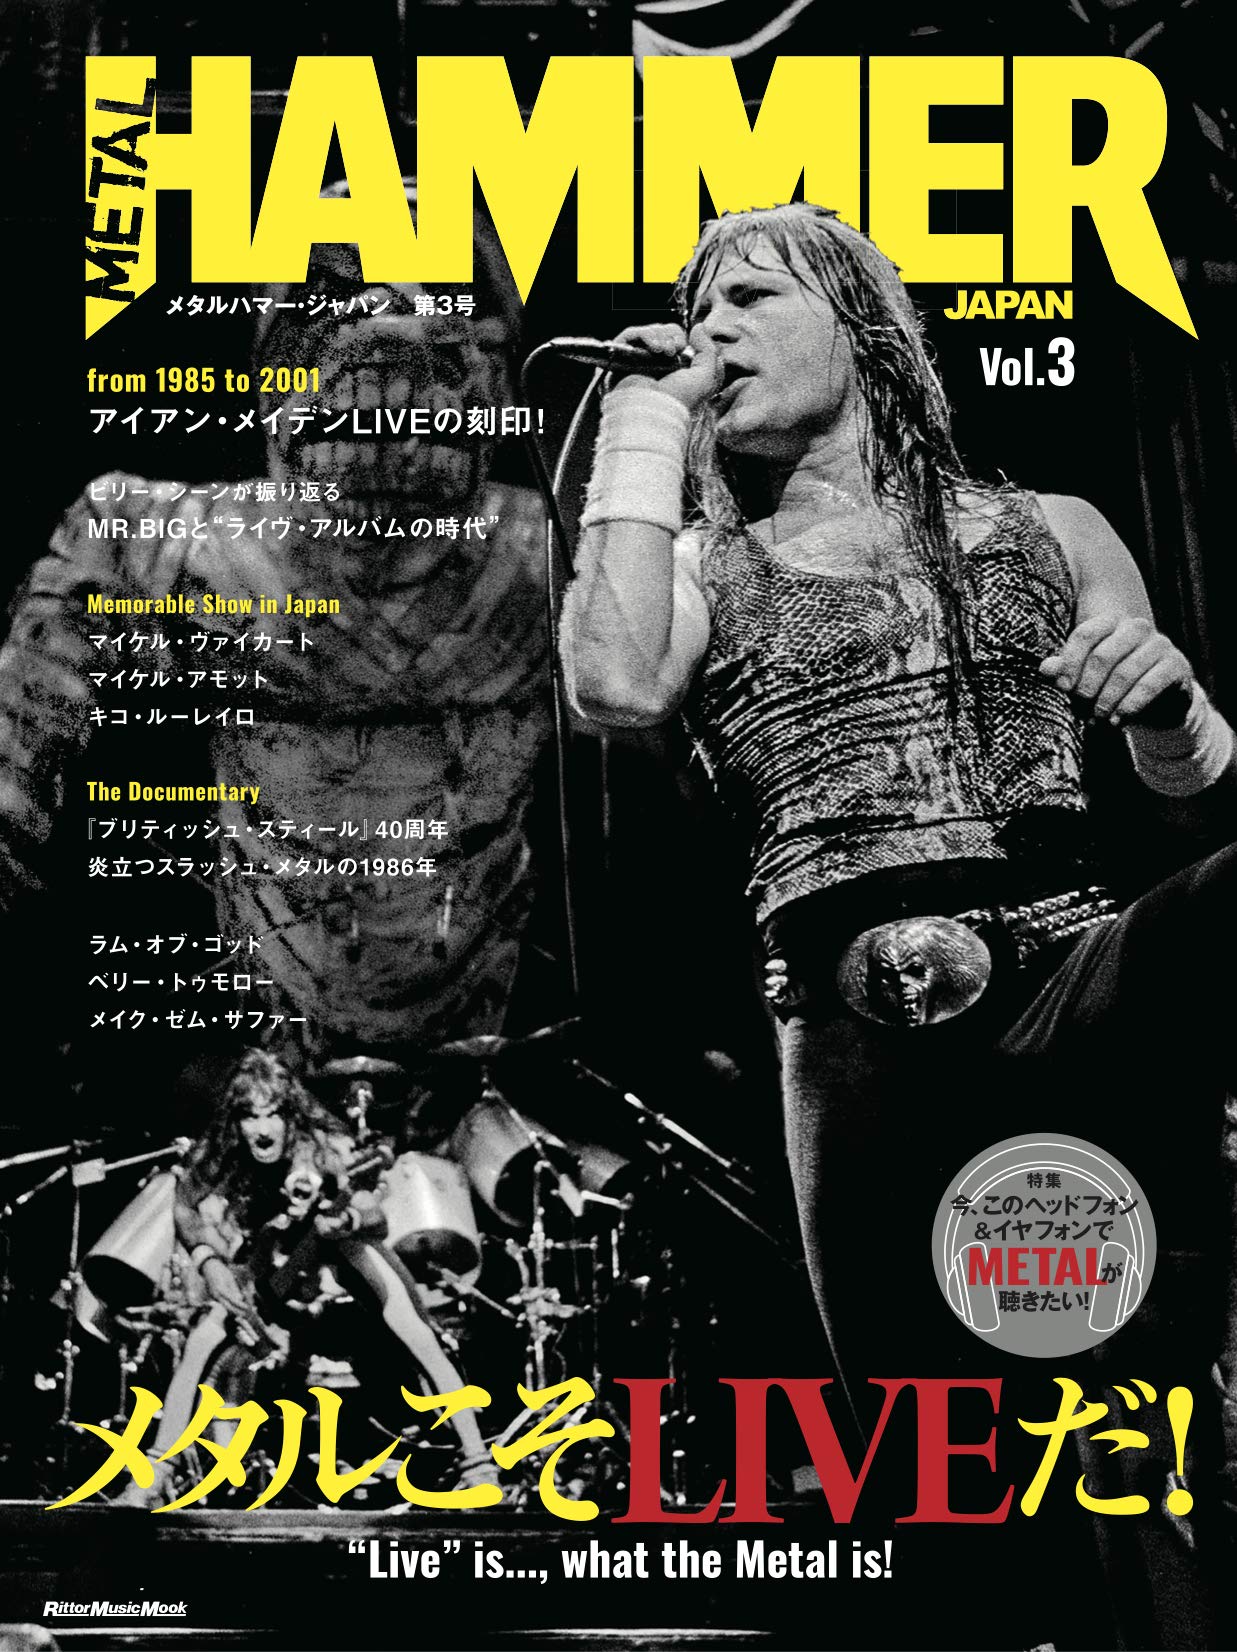 英ヘヴィメタル専門誌の日本版 Metal Hammer Japan そのvol 3が明日発売 巻頭はアイアン メイデン All About News